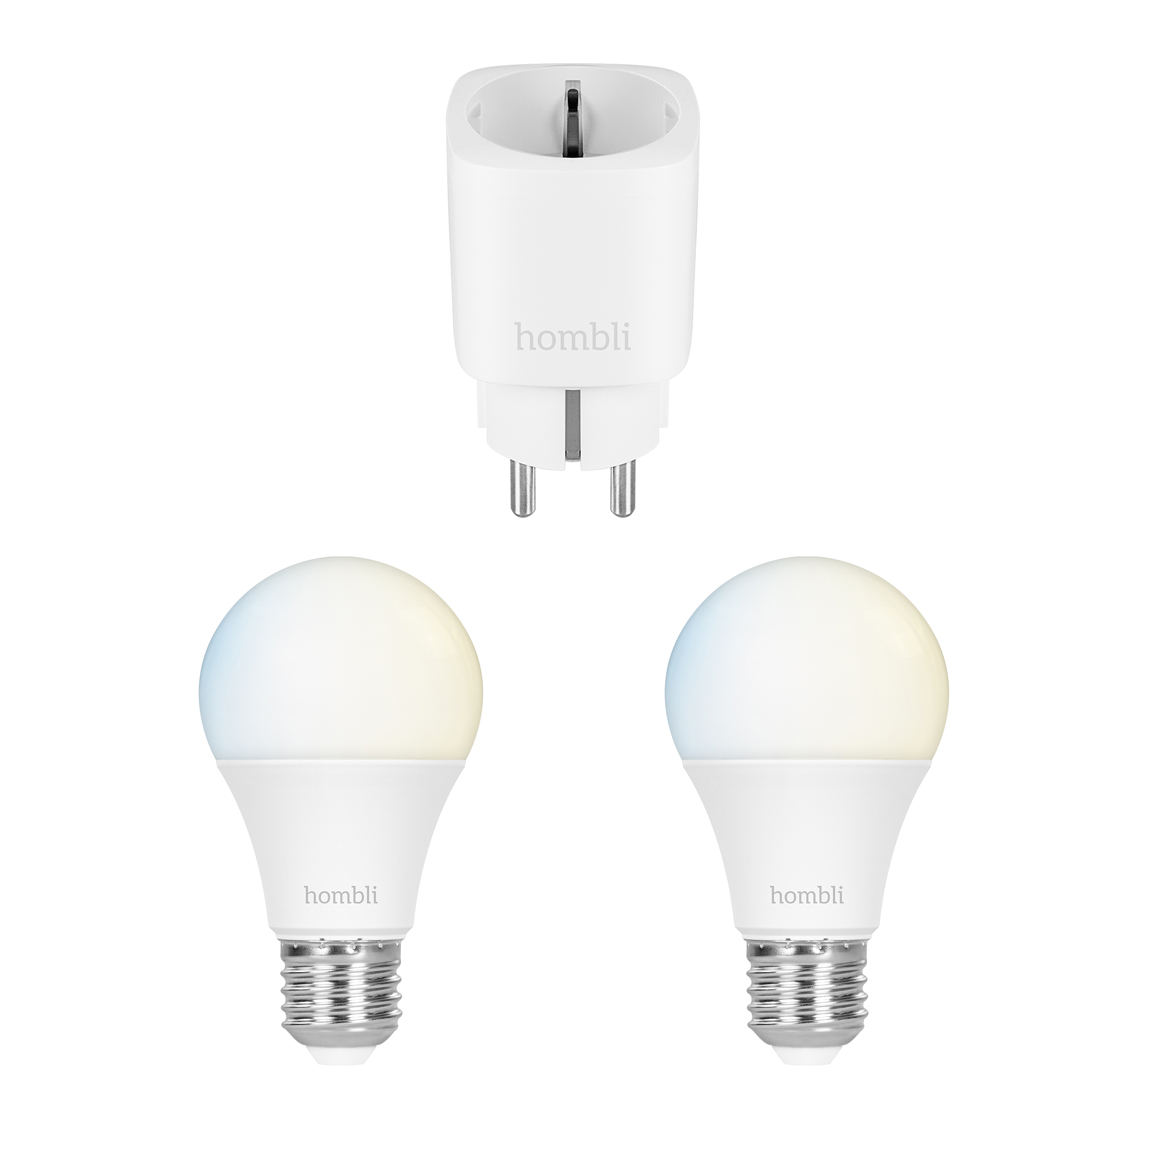 Hombli Smart Bulb White 2-pack + Smart Socket